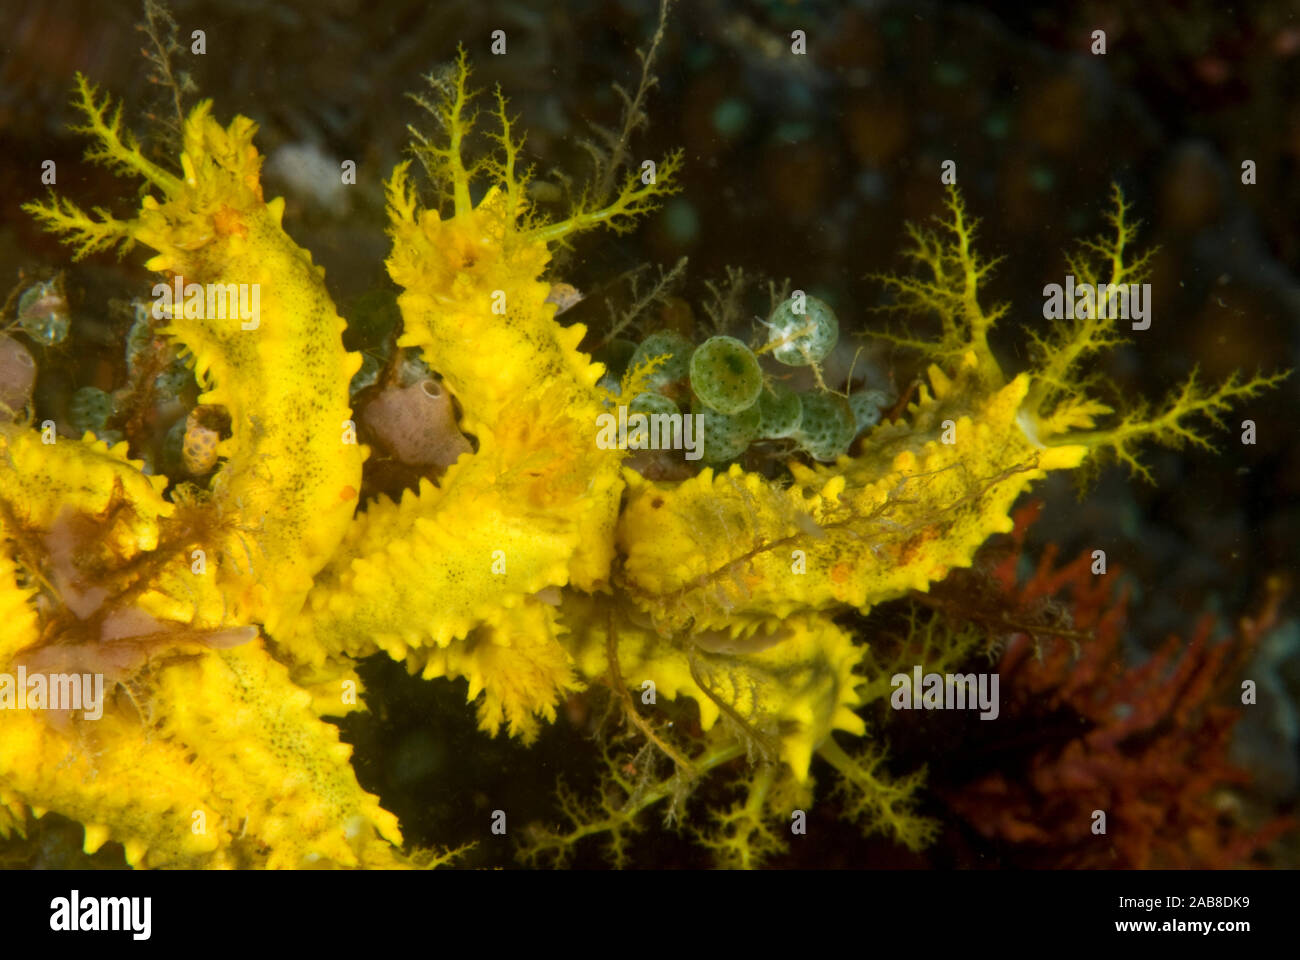 Orange sea cucumber (Cucumaria miniata), resembles a bright yellow ...